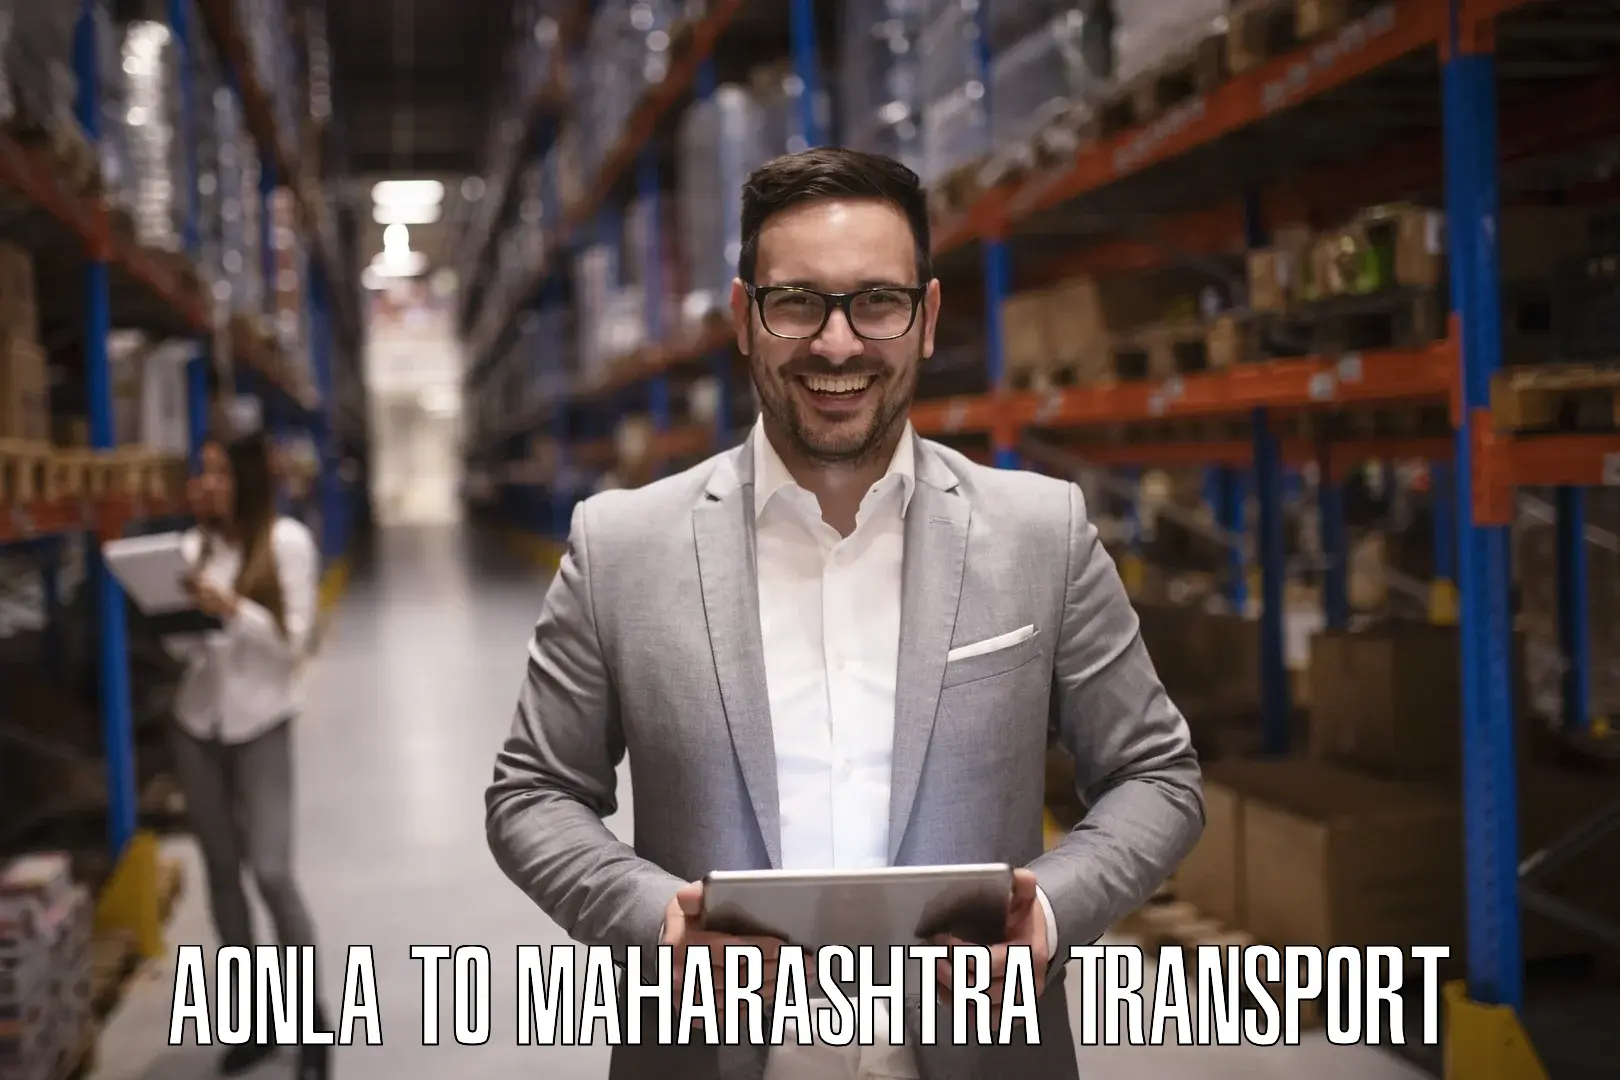 Transportation services Aonla to Maharashtra